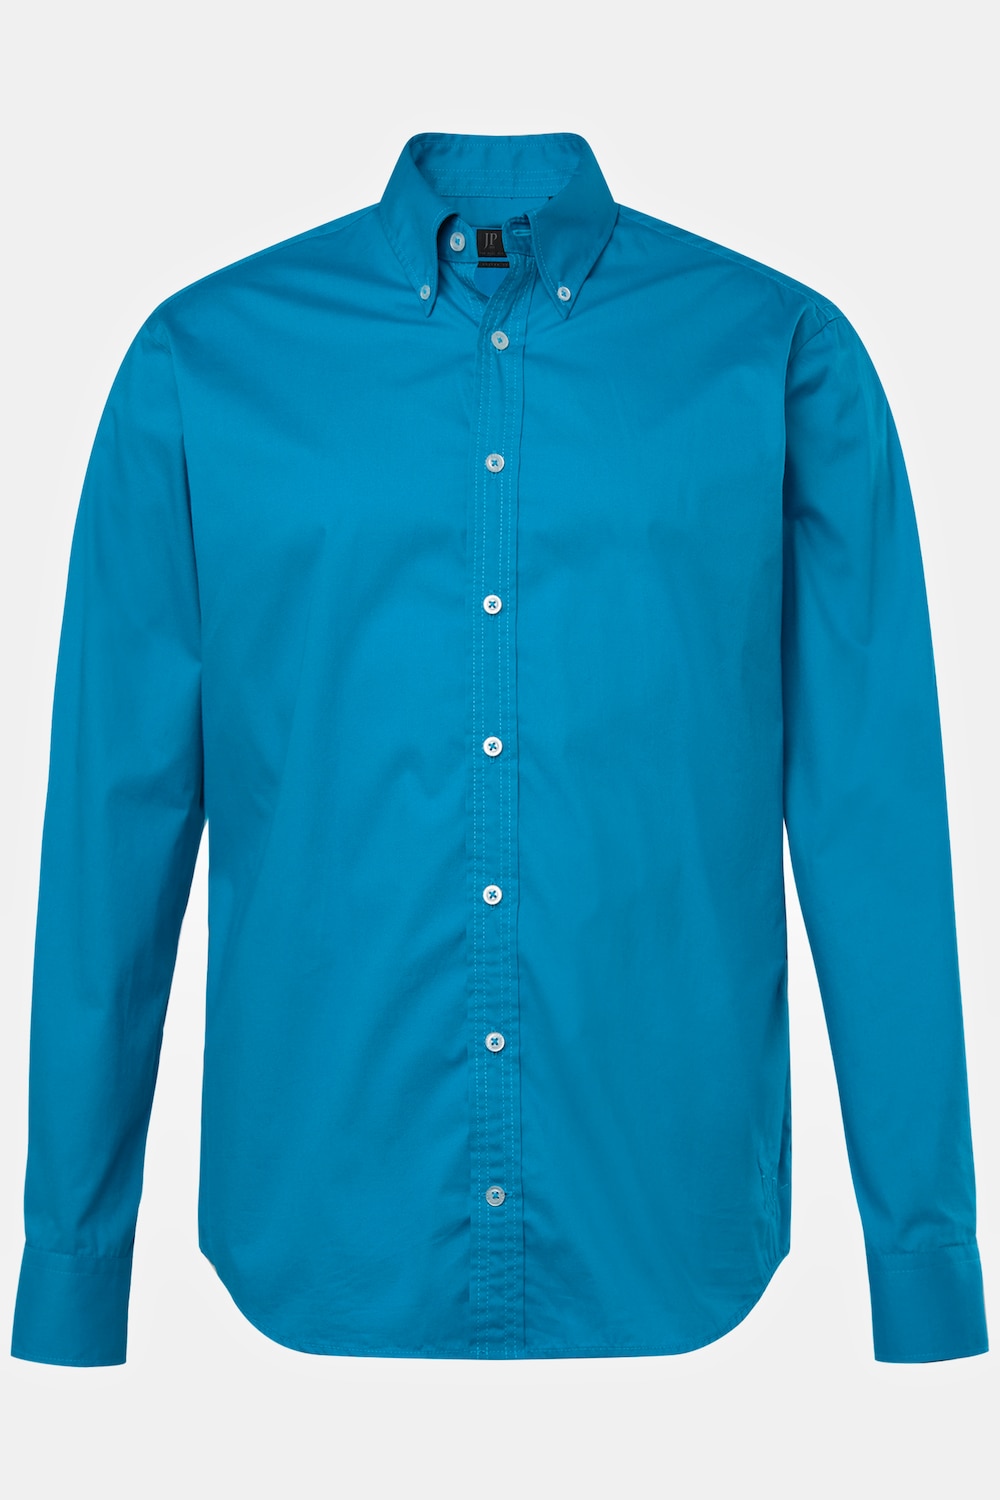 Grote Maten Overhemd, Heren, turquoise, Maat: 6XL, Katoen, JP1880